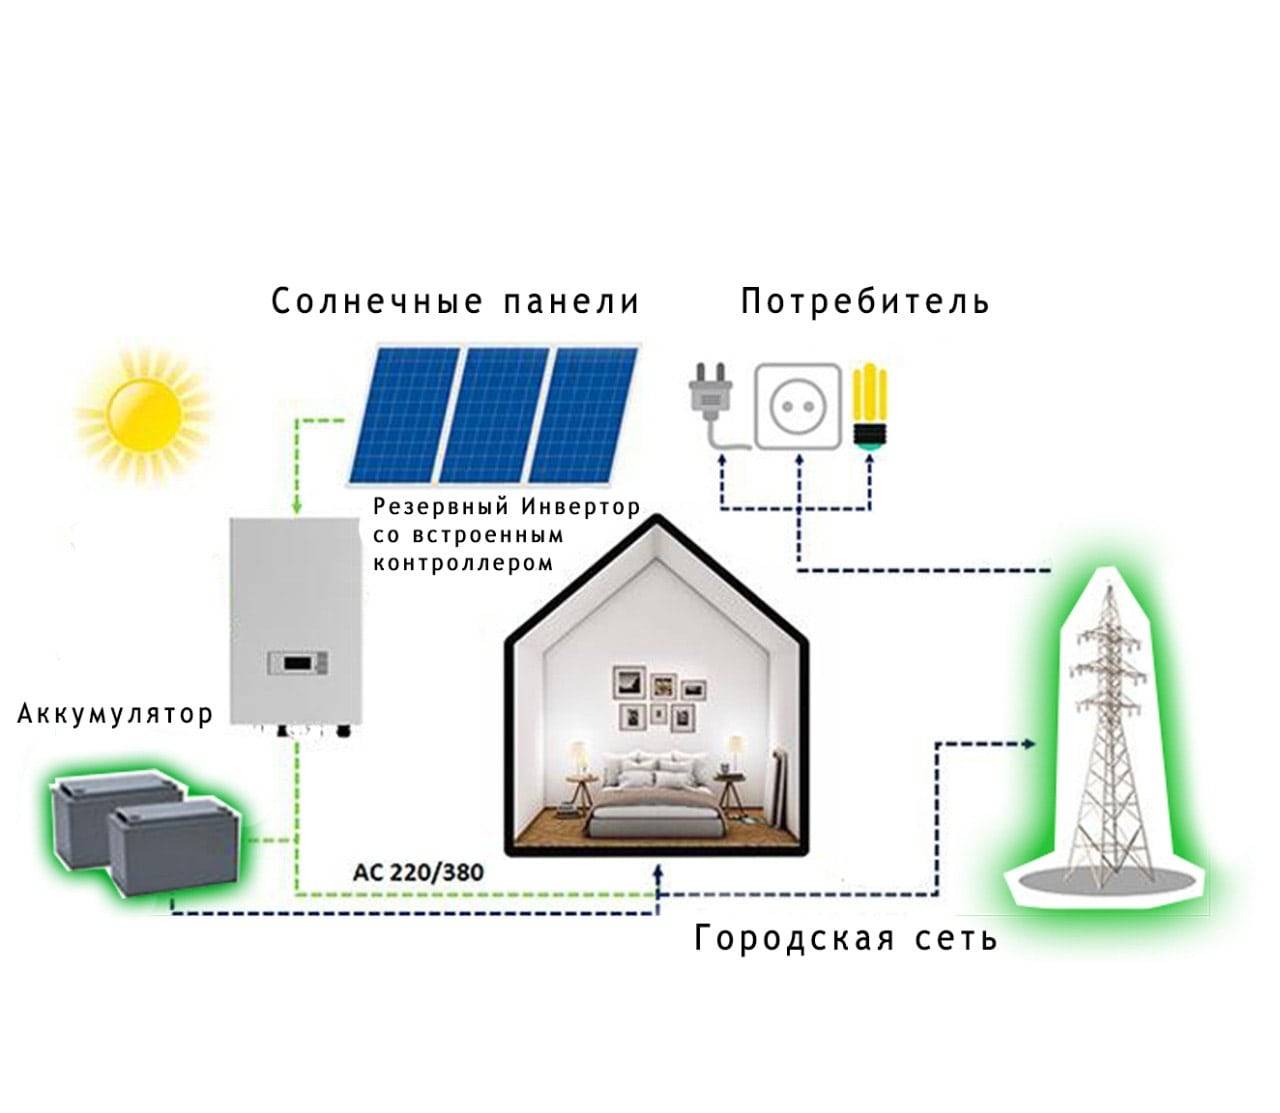 Системы автономного электроснабжения для частного дома — делимся знаниями